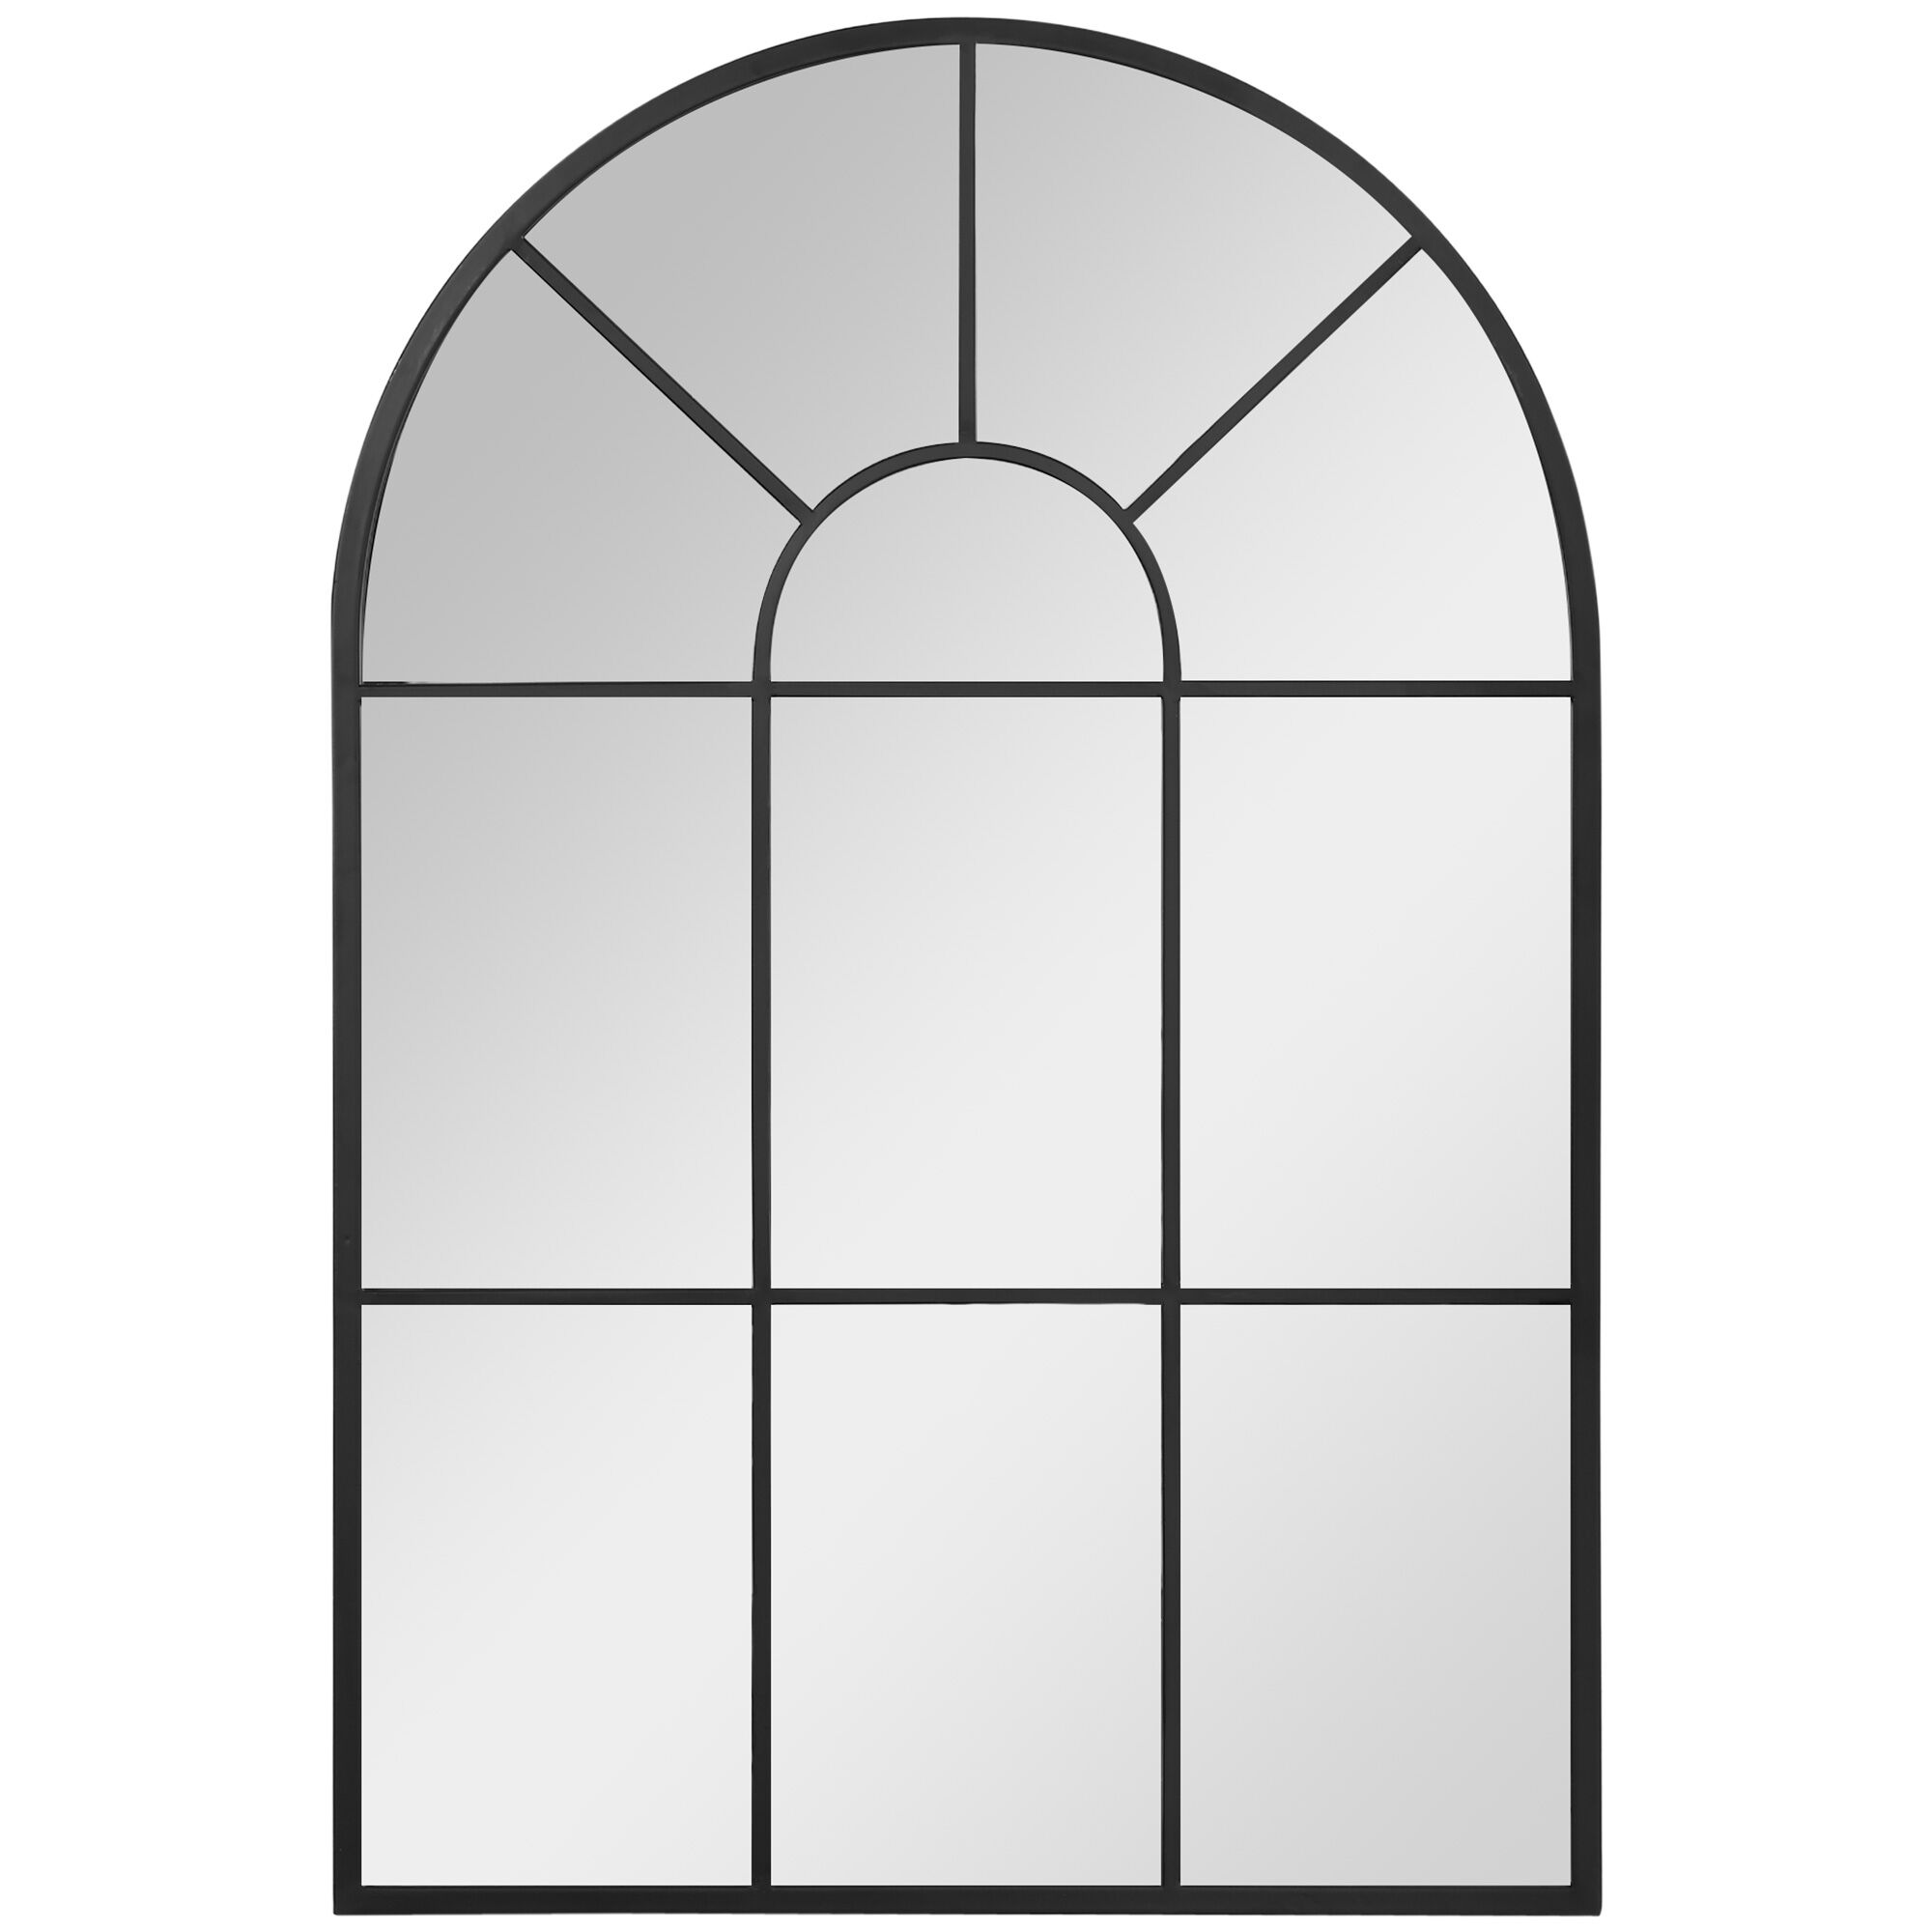 HOMCOM Miroir en métal style industriel effet verrière fenêtre arcade - 91 x 60 cm